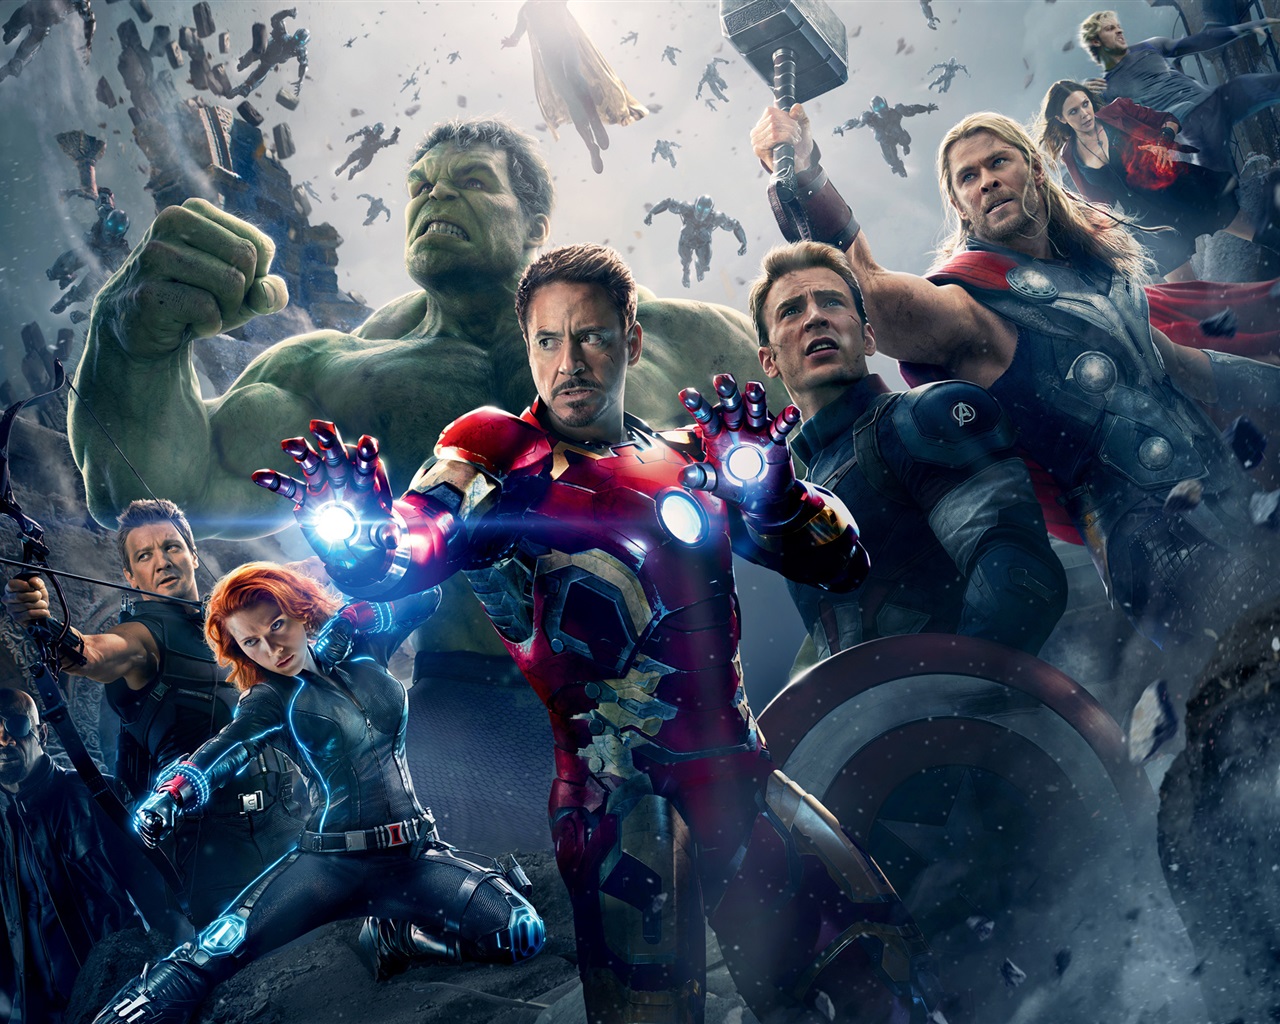 Avengers Age of Ultron 2015 Fondos de pantalla 1280x1024 Fondos de